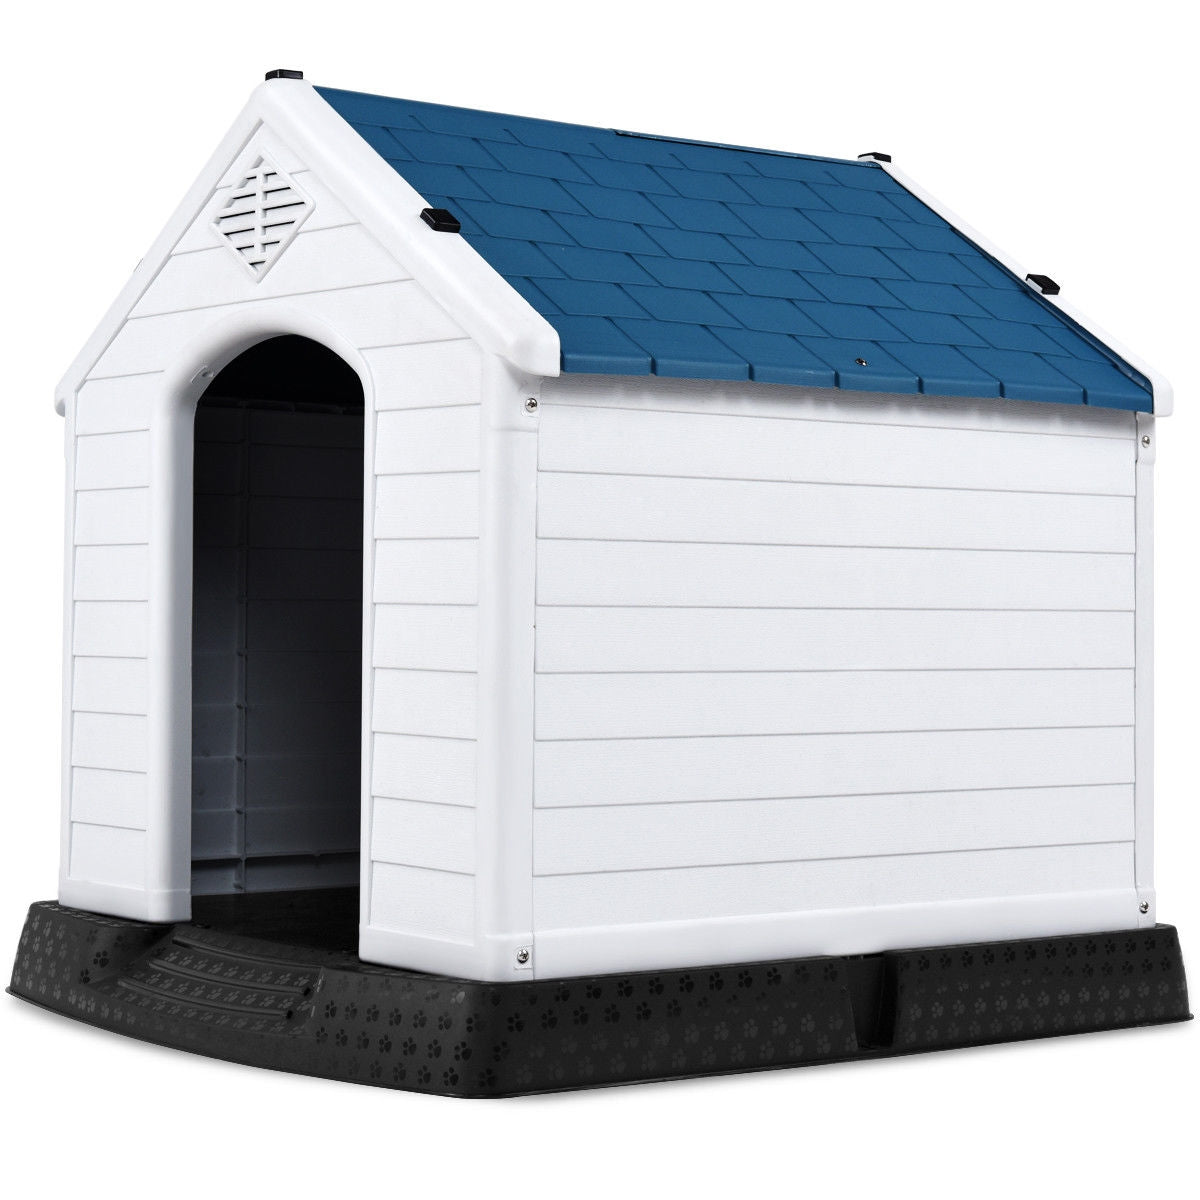 Indoor/Outdoor Waterproof Plastic Dog House Pet Puppy Shelter